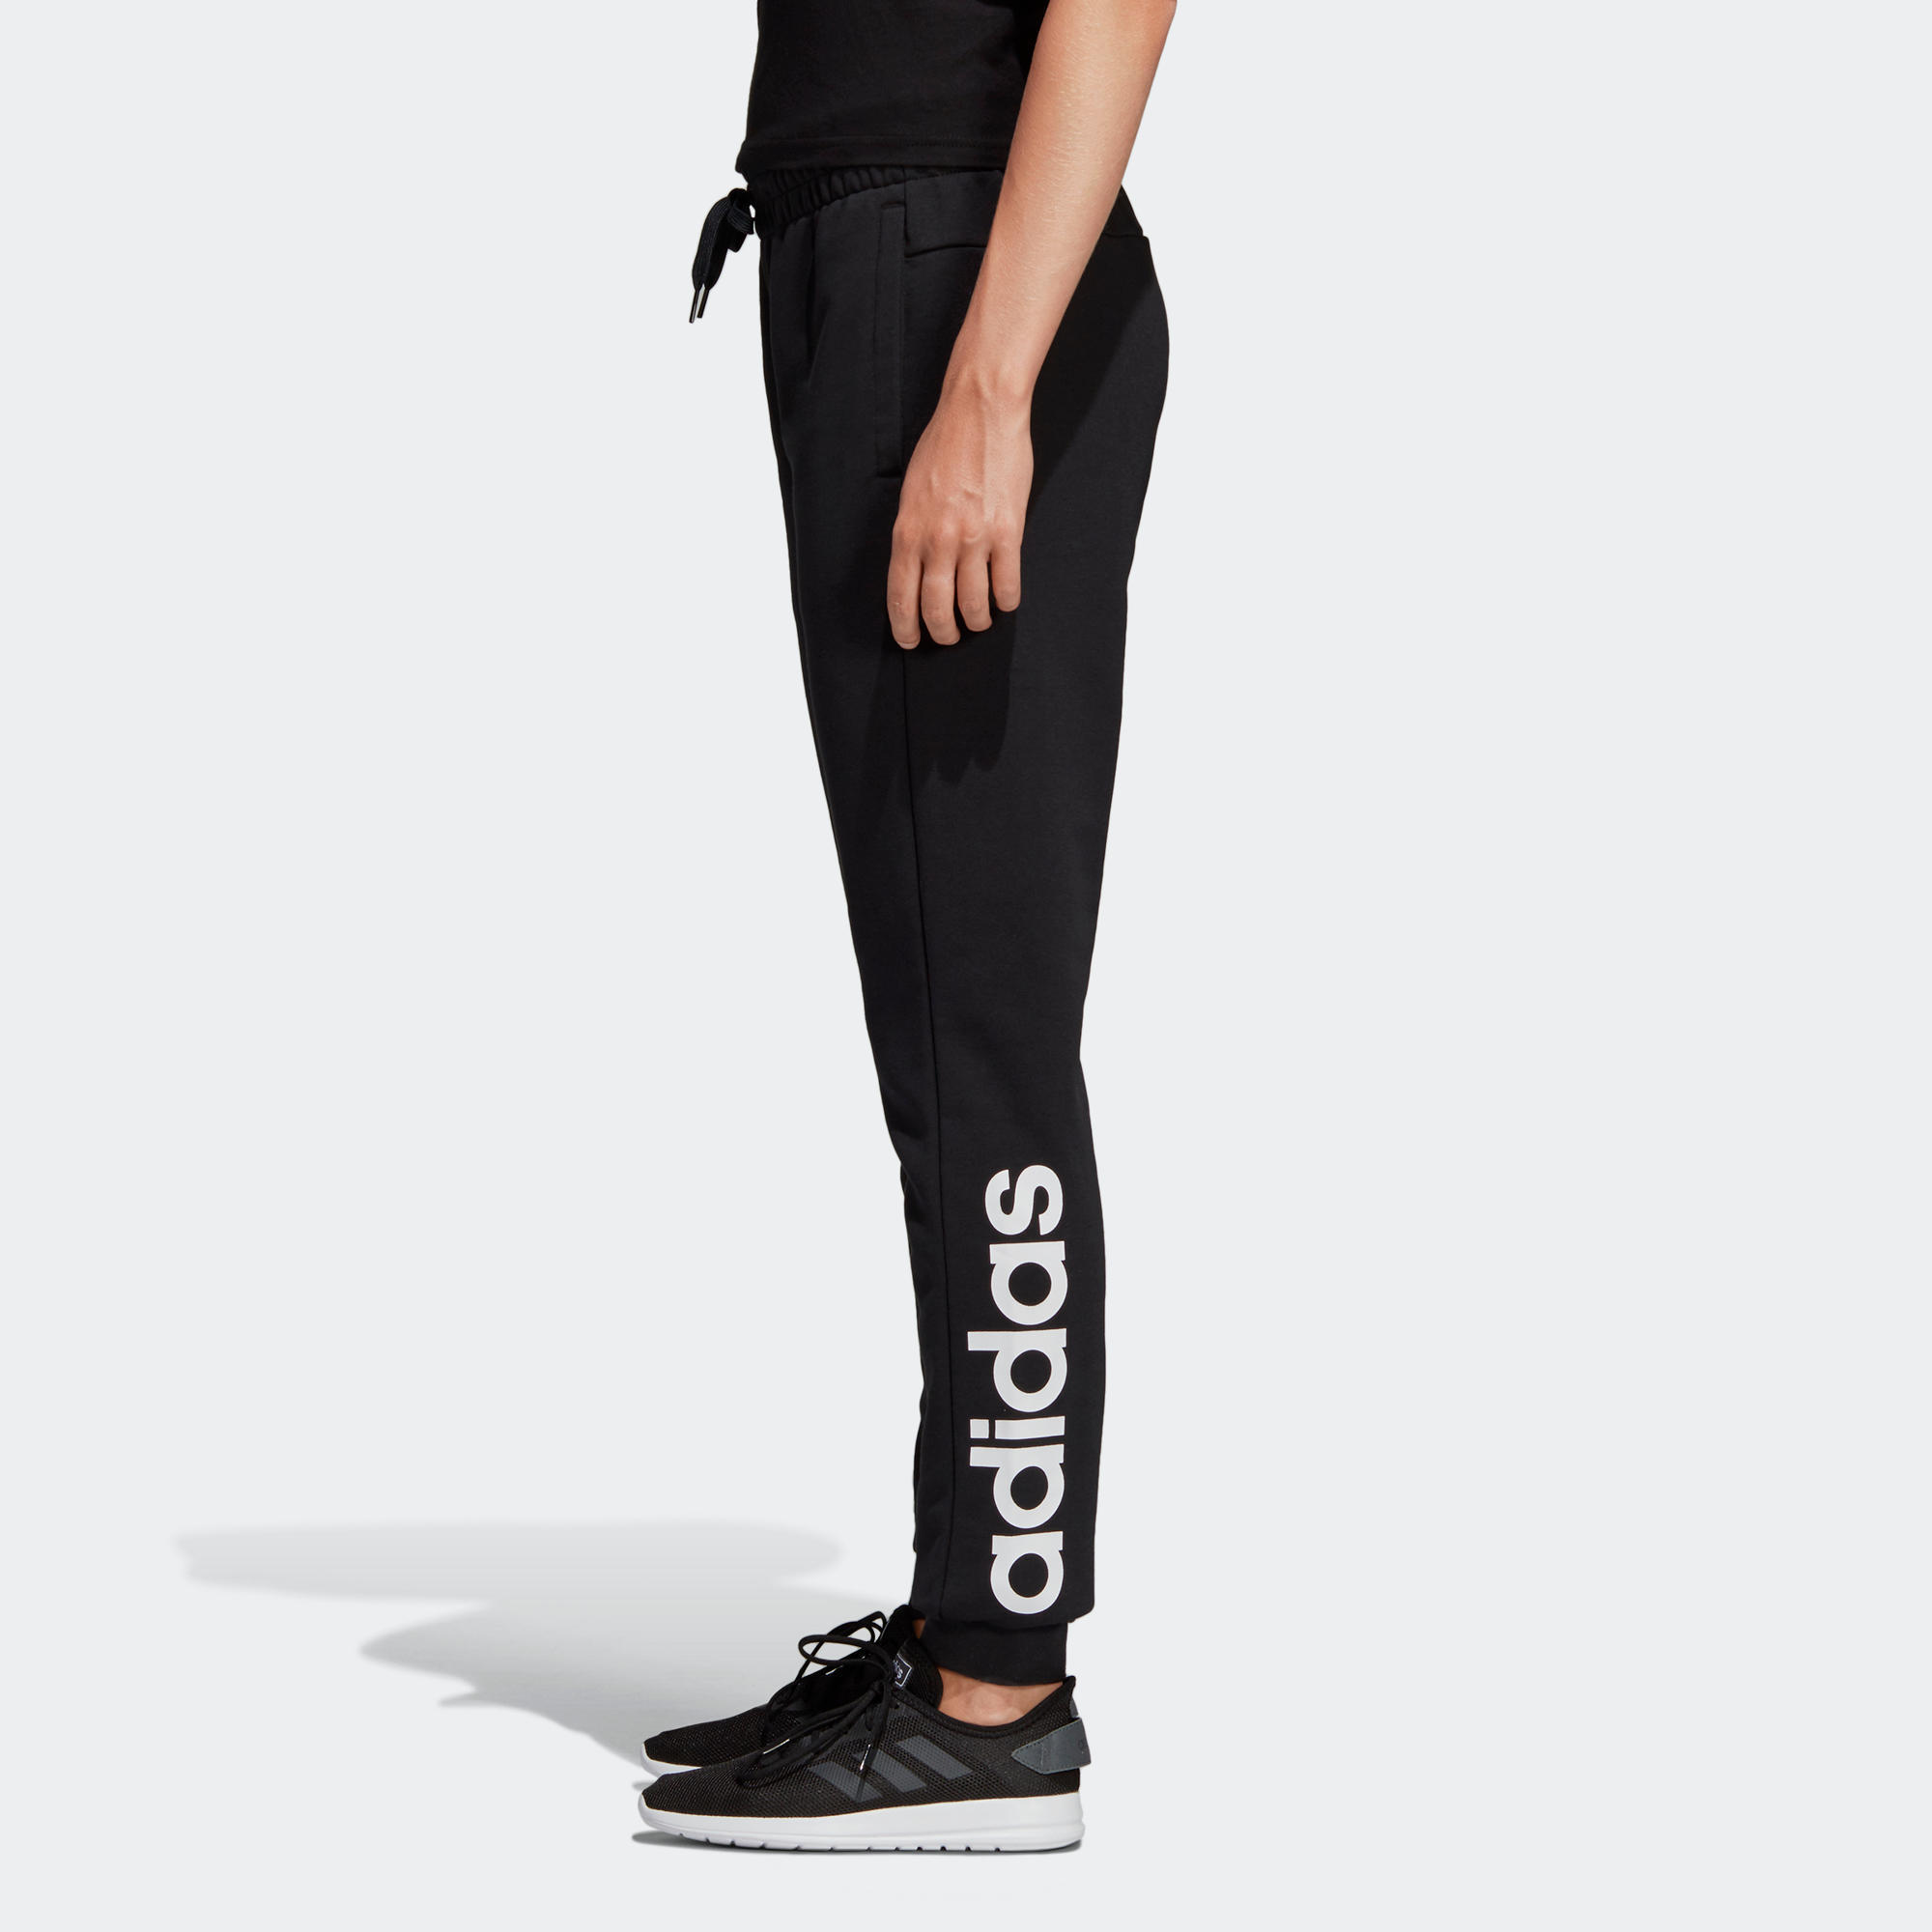 Pantalon de survêtement Adidas Linear 500 femme noir Adidas 